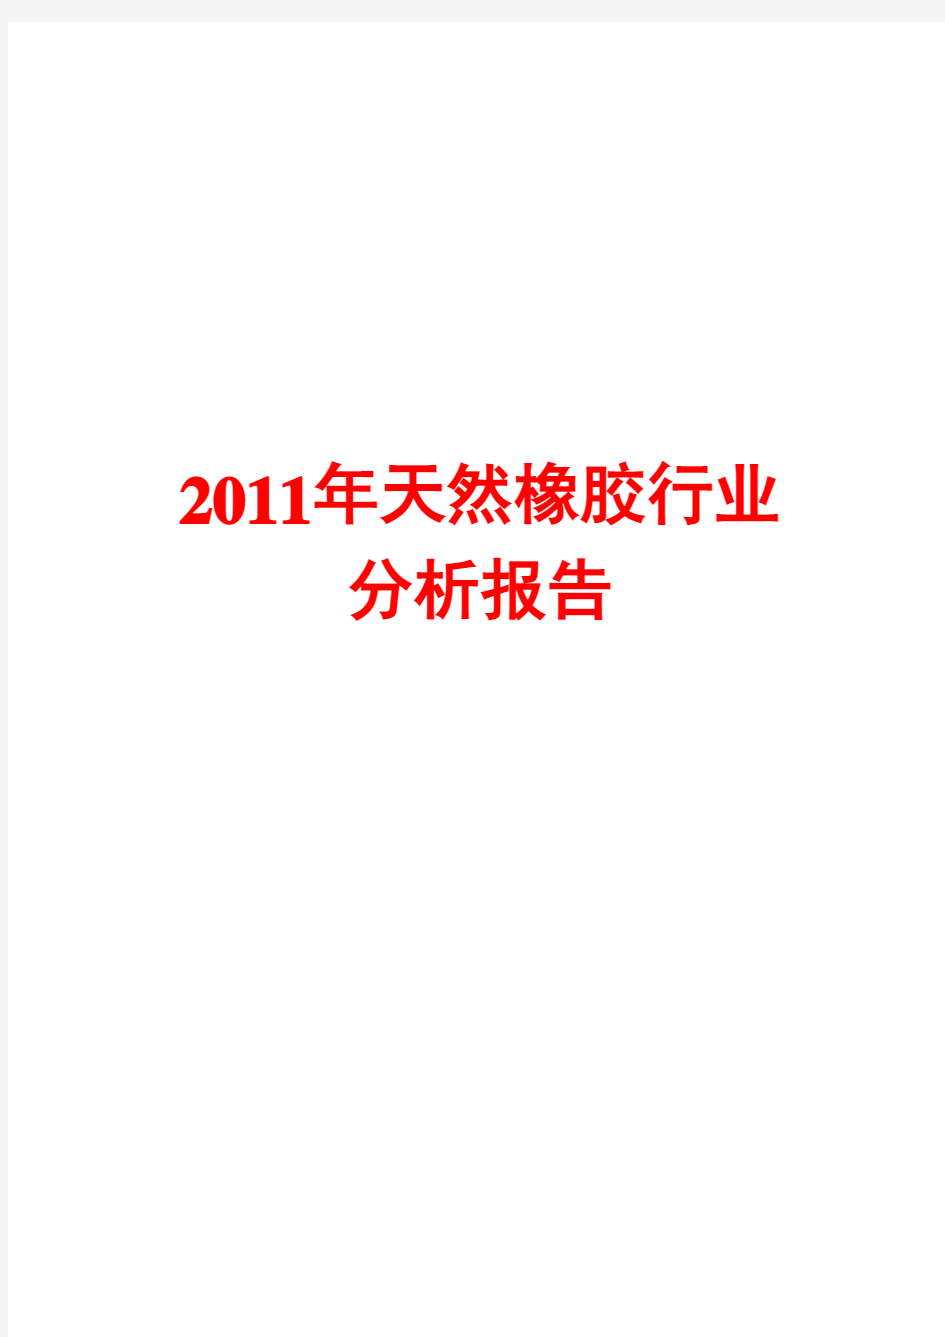 天然橡胶行业分析报告2011